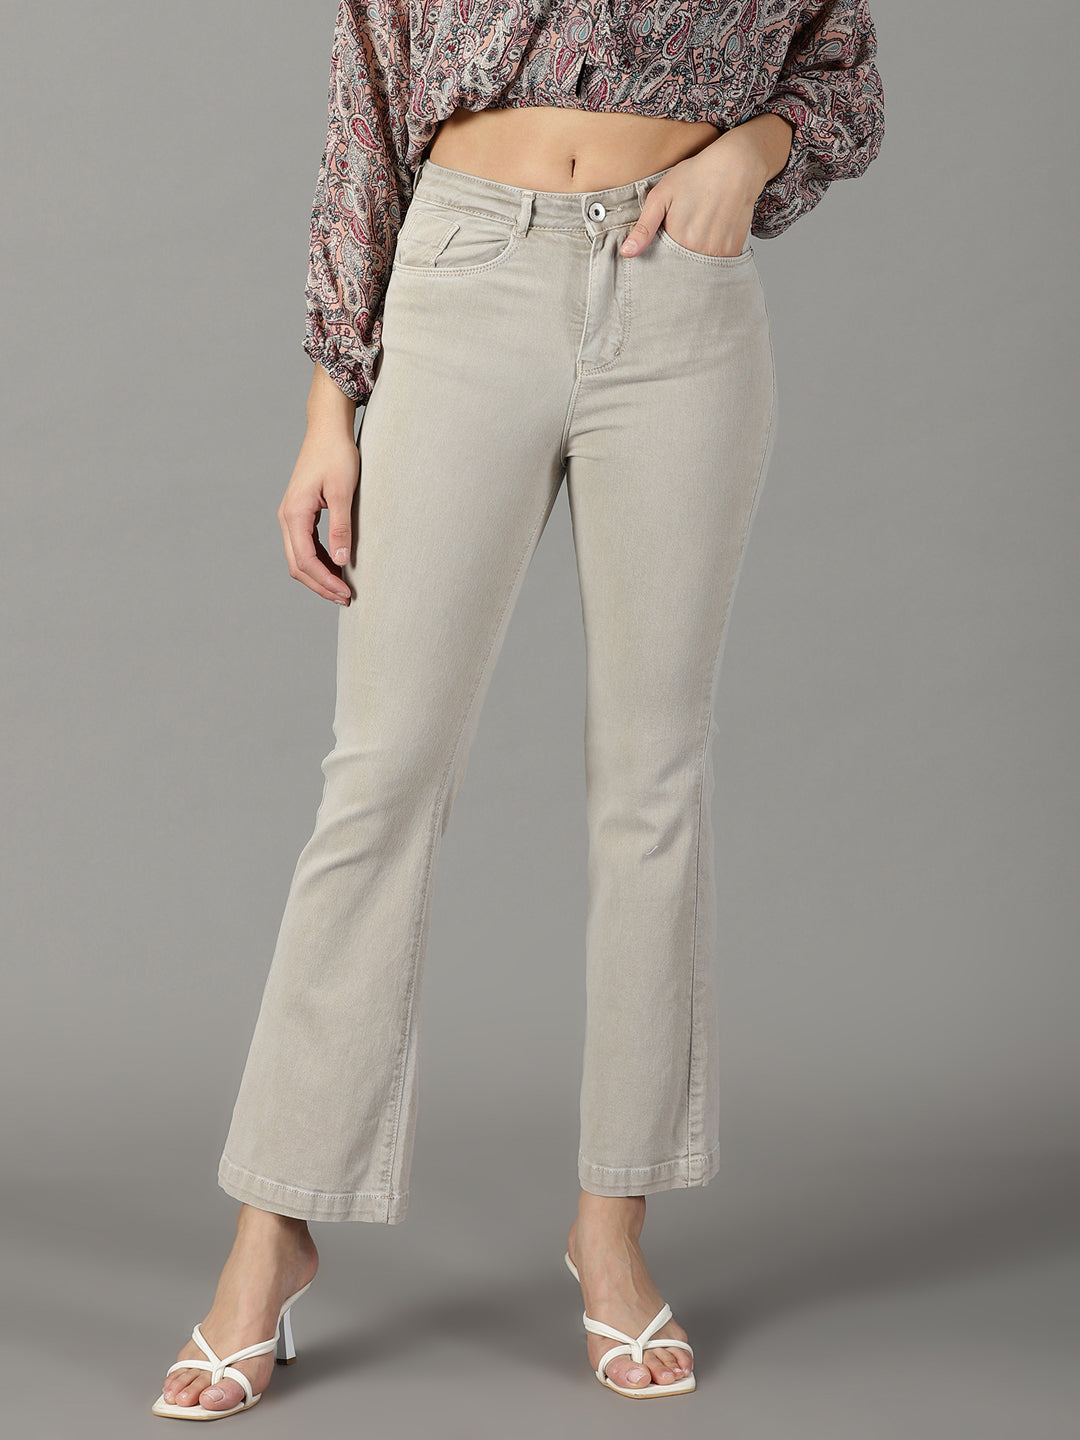 Women's Beige Solid Bootcut Denim Jeans